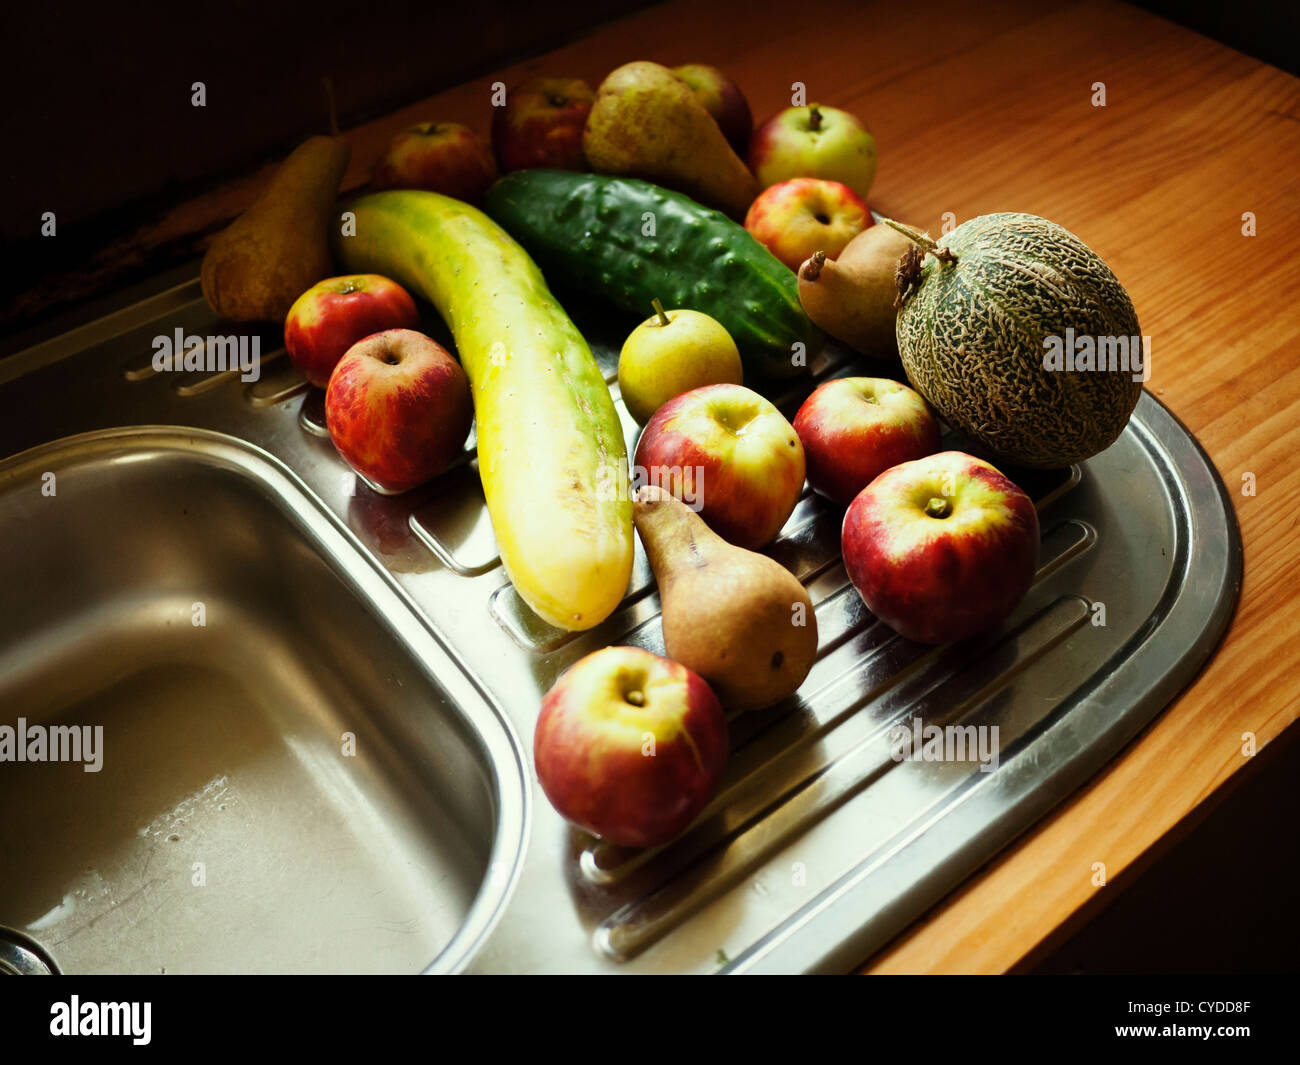 Raccolta organica: selezione casuale di frutta e verdura raccolti quando sono maturi da casa giardino - mela, pera, melone, cetriolo Foto Stock